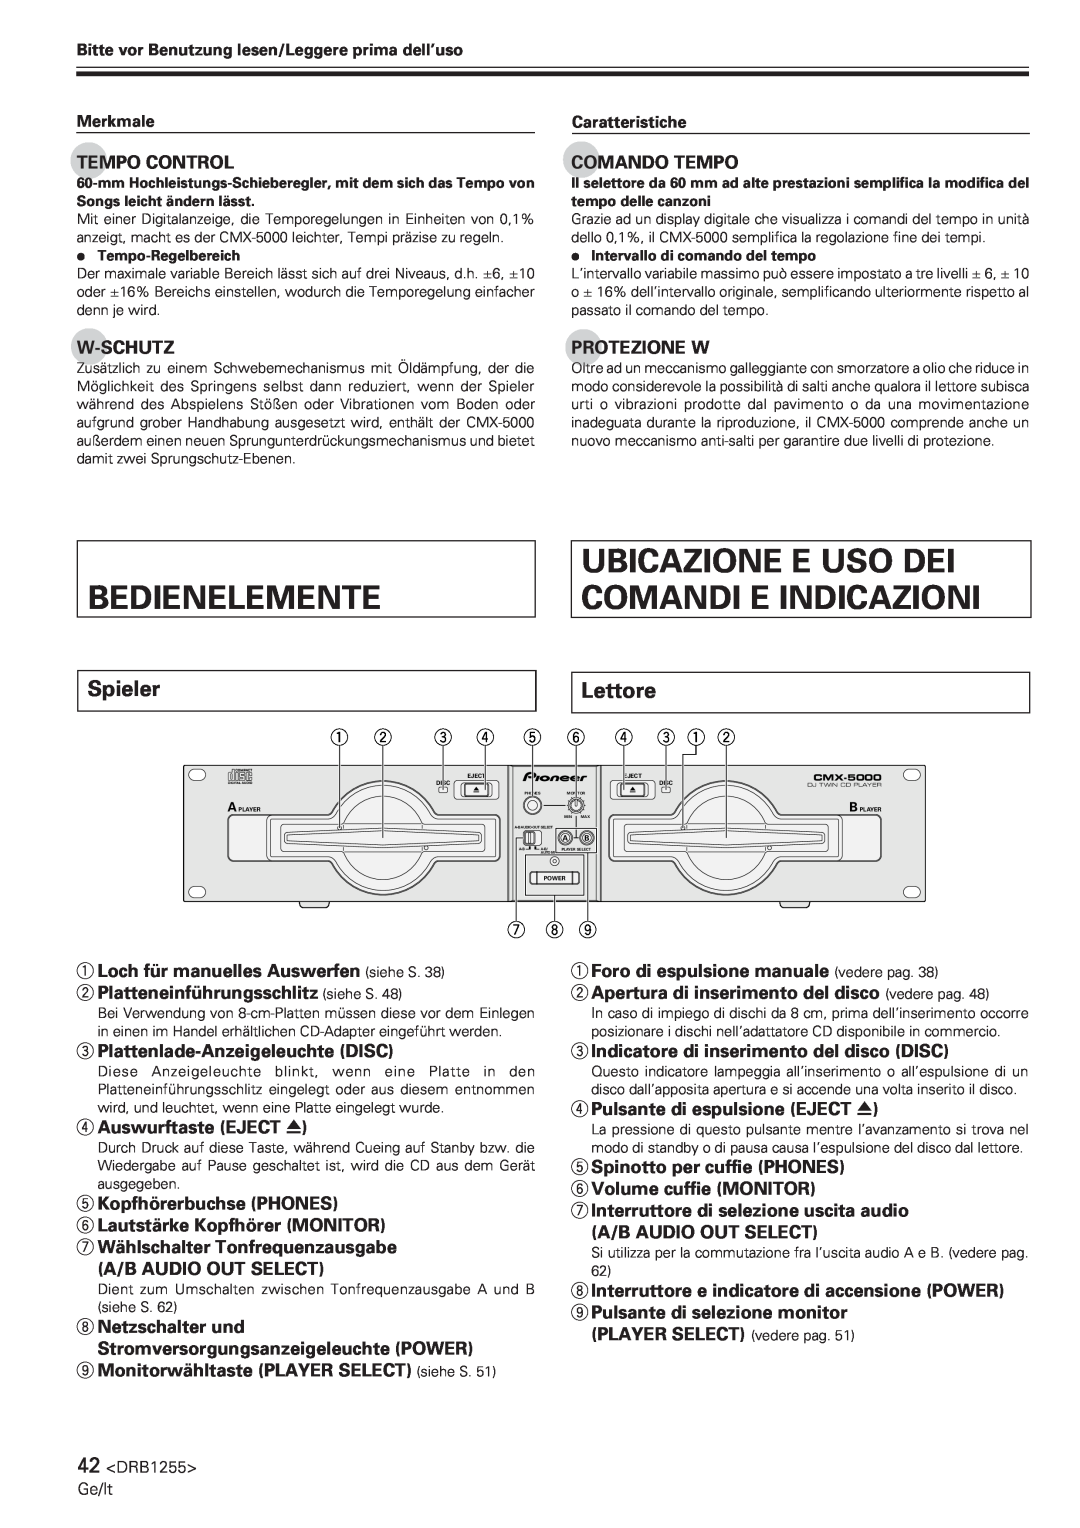 Pioneer CMX-5000 manual Bedienelemente, Ubicazione E Uso Dei Comandi E Indicazioni, Spieler, Lettore, 1 2 3 4 5 6 4 3 1 